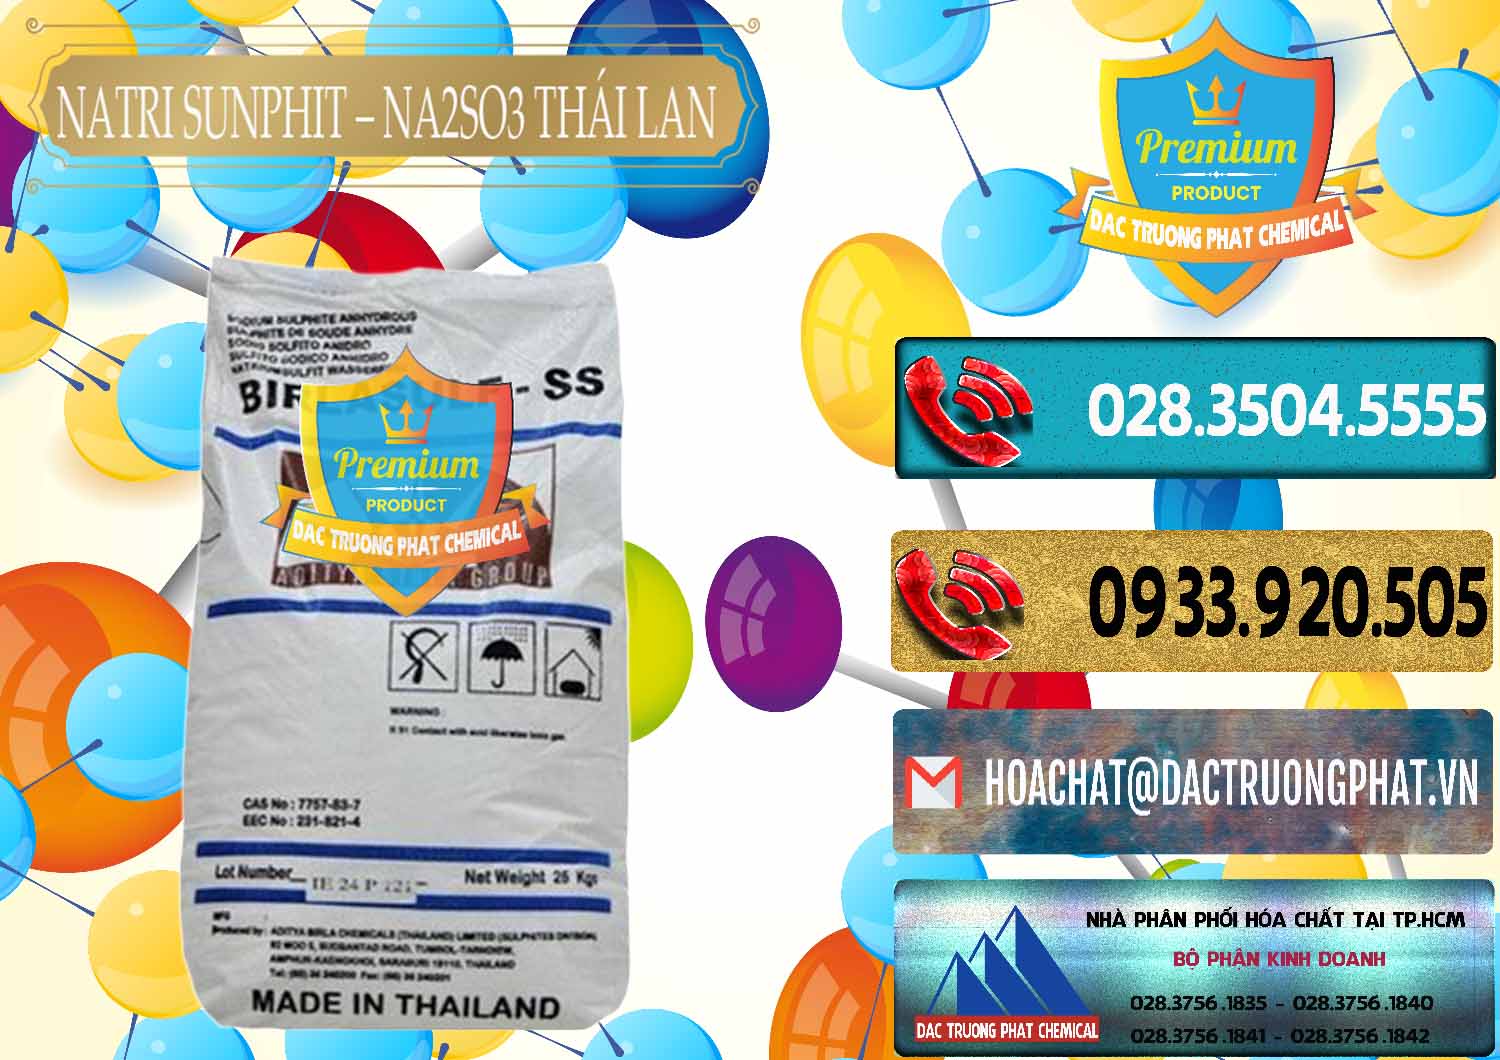 Chuyên bán - cung cấp Natri Sunphit - NA2SO3 Thái Lan - 0105 - Nơi chuyên nhập khẩu & cung cấp hóa chất tại TP.HCM - hoachatdetnhuom.com